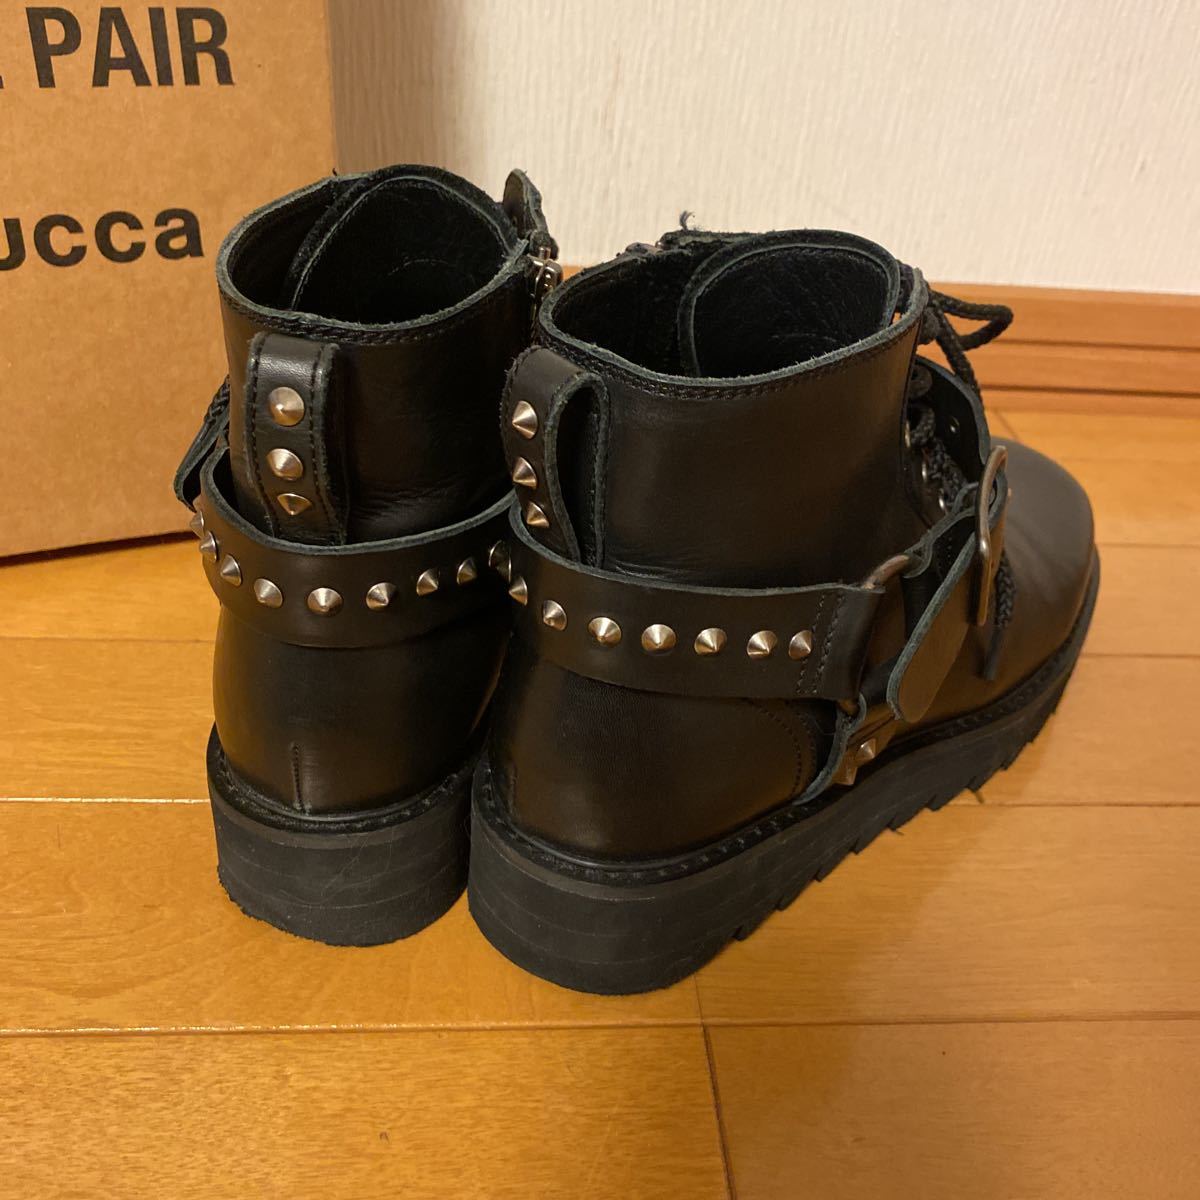  красивая вещь ◆...　zucca ... ботинки 　 короткий   ботинки ◆ черный ◆ размер  M 24.0～24.5